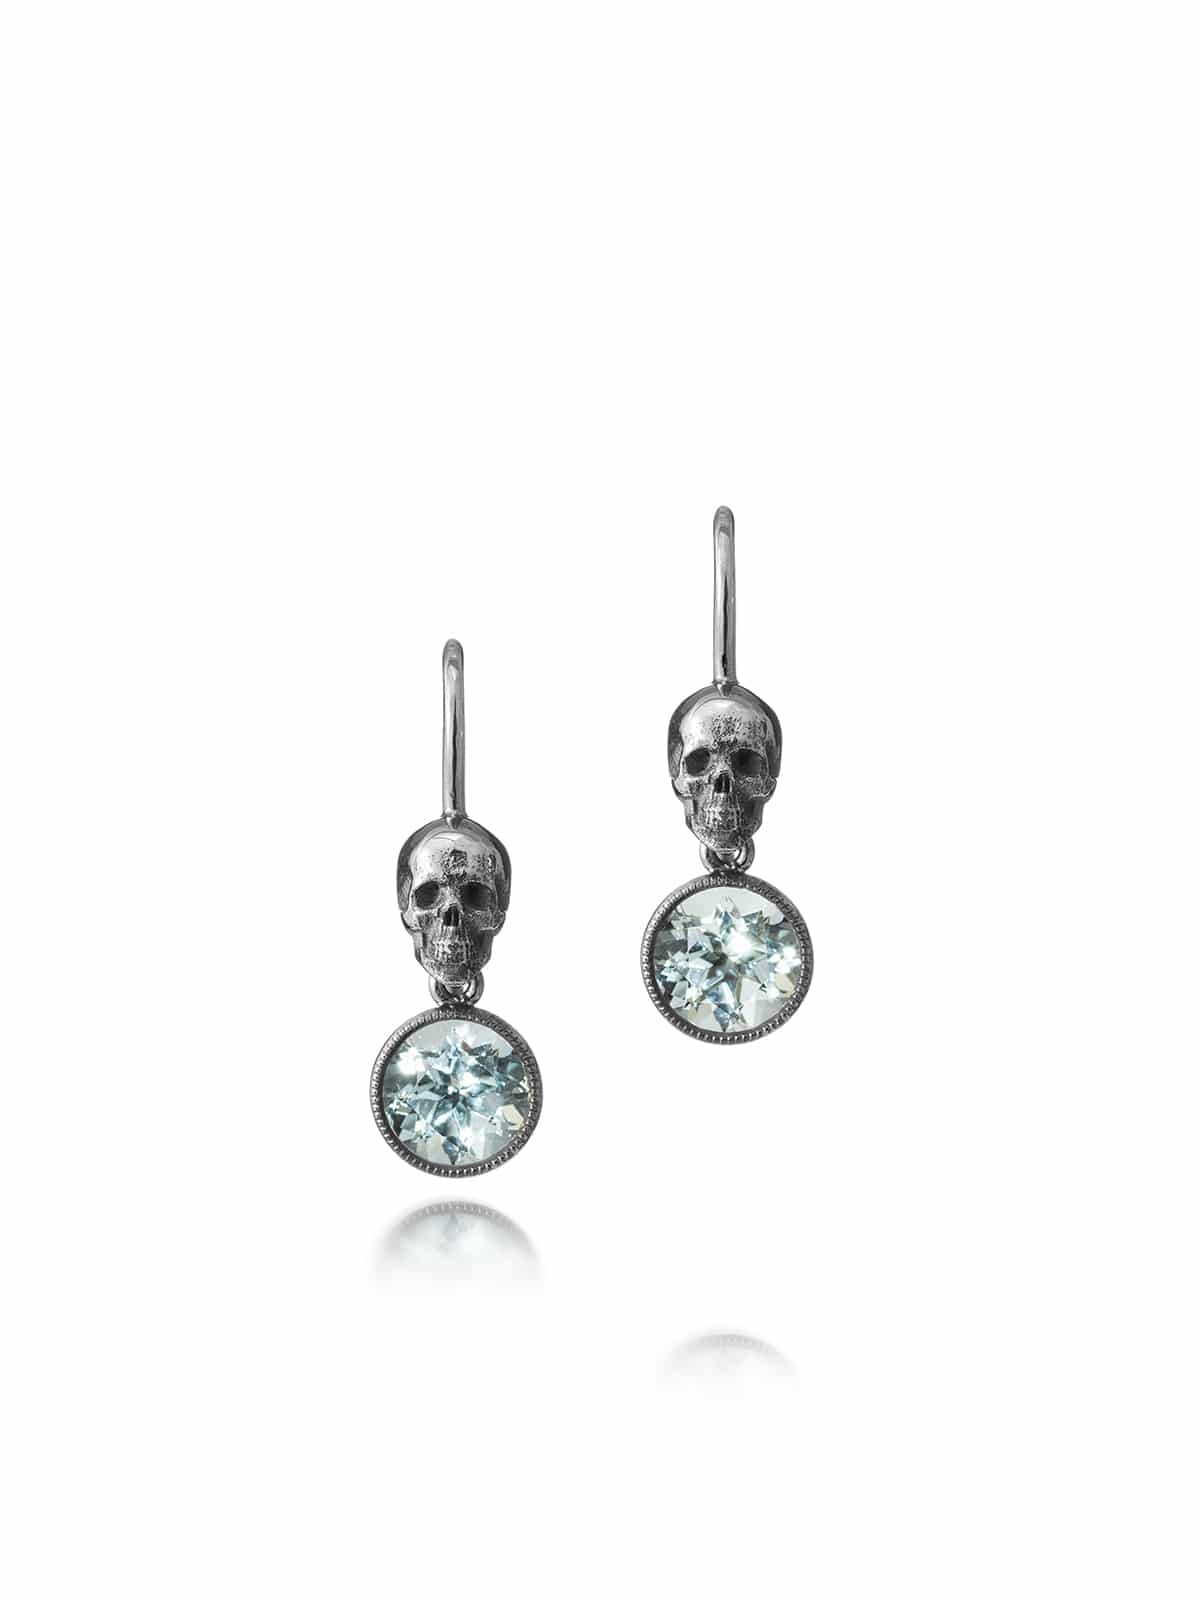 Skull earrings with beryls